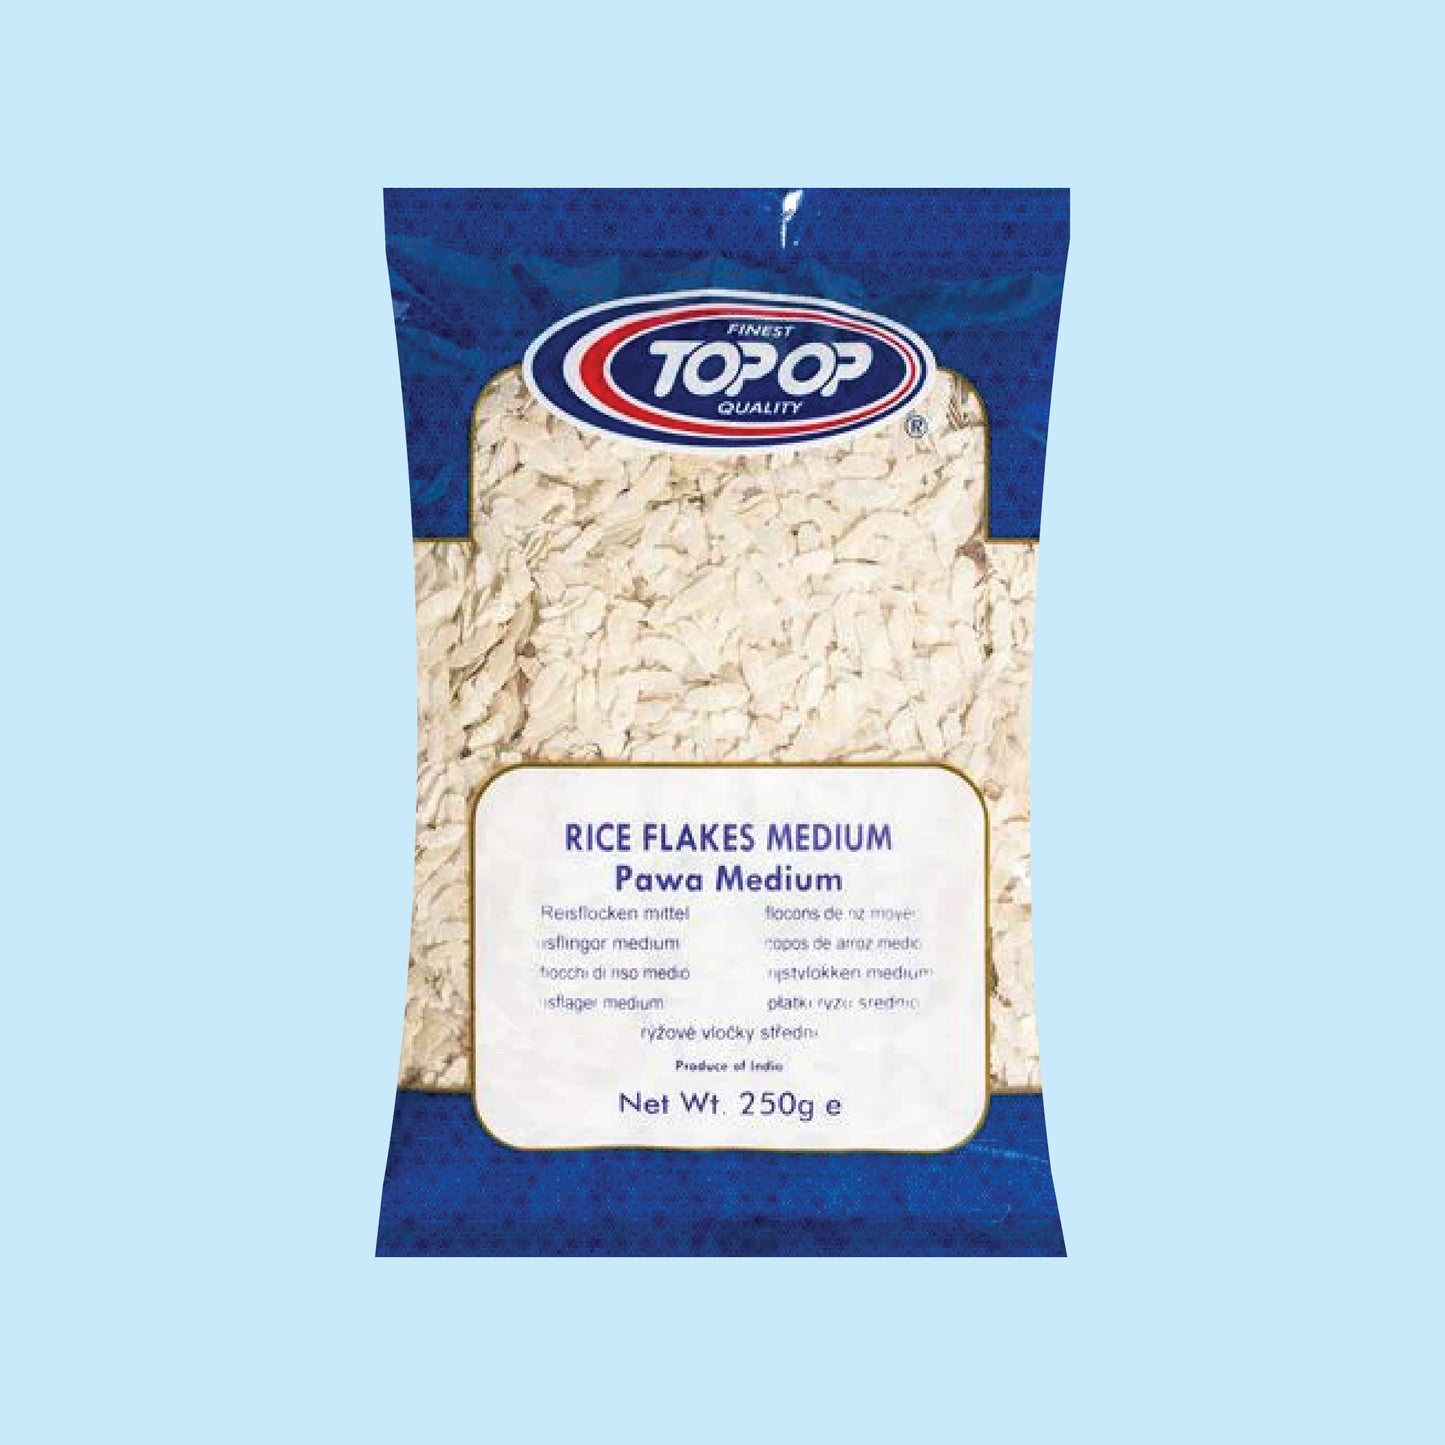 Top-Op Pawa (Rice Flakes) Medium